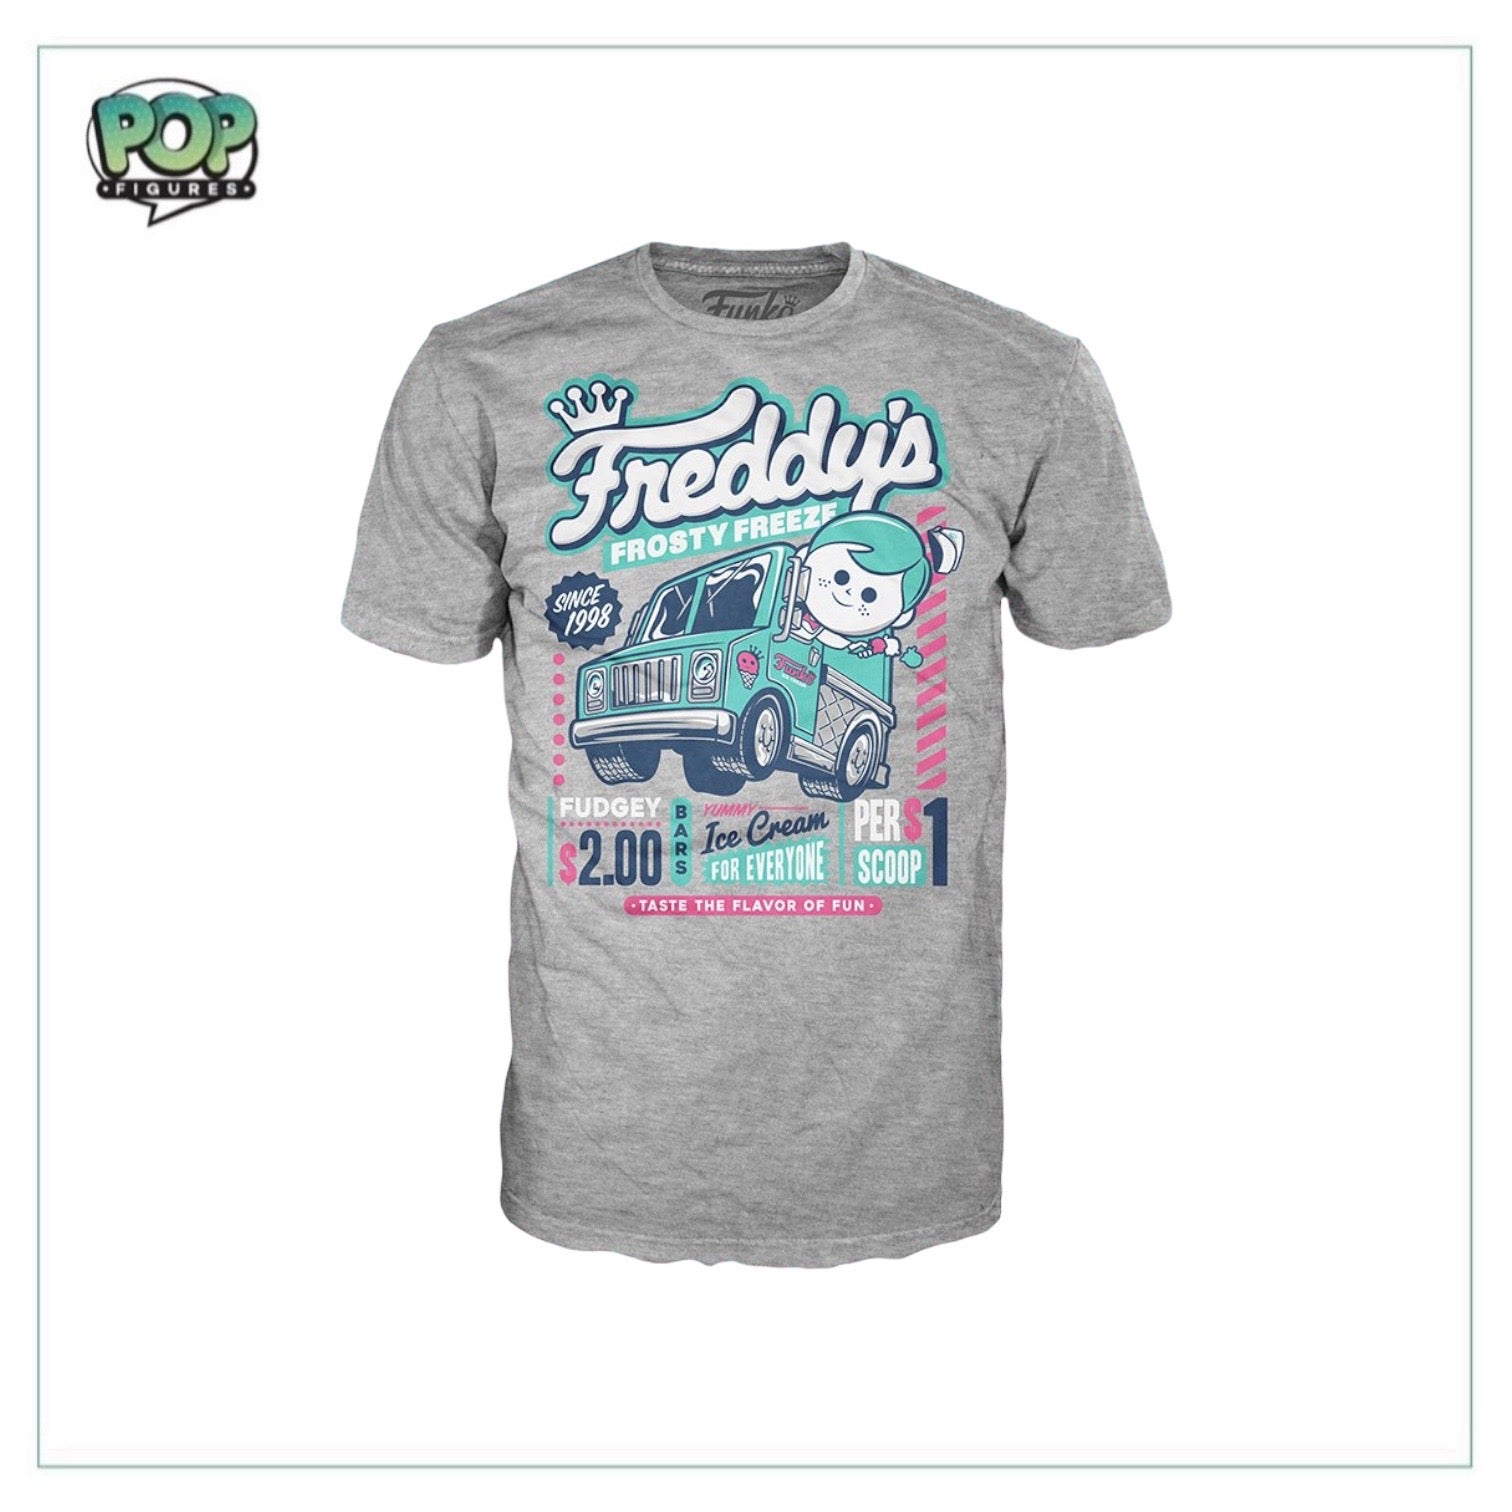 Freddy's Frosty Freeze Funko Pop Tee! - LE984/1000 - Size 2XL